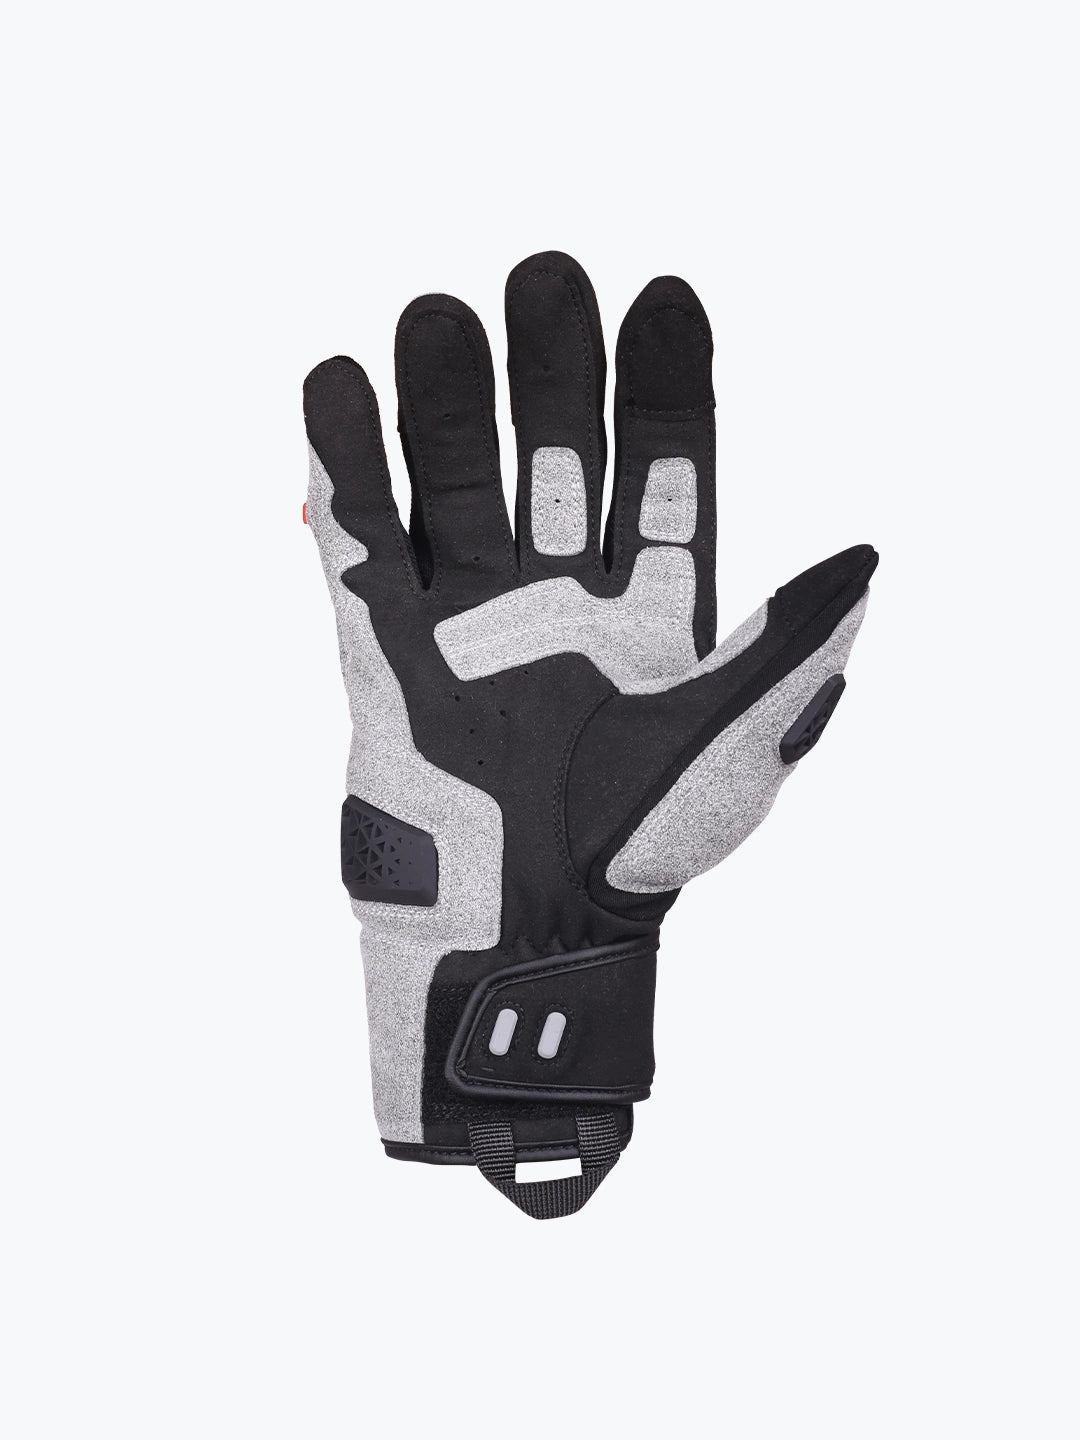 Motowolf Gloves Grey 0338